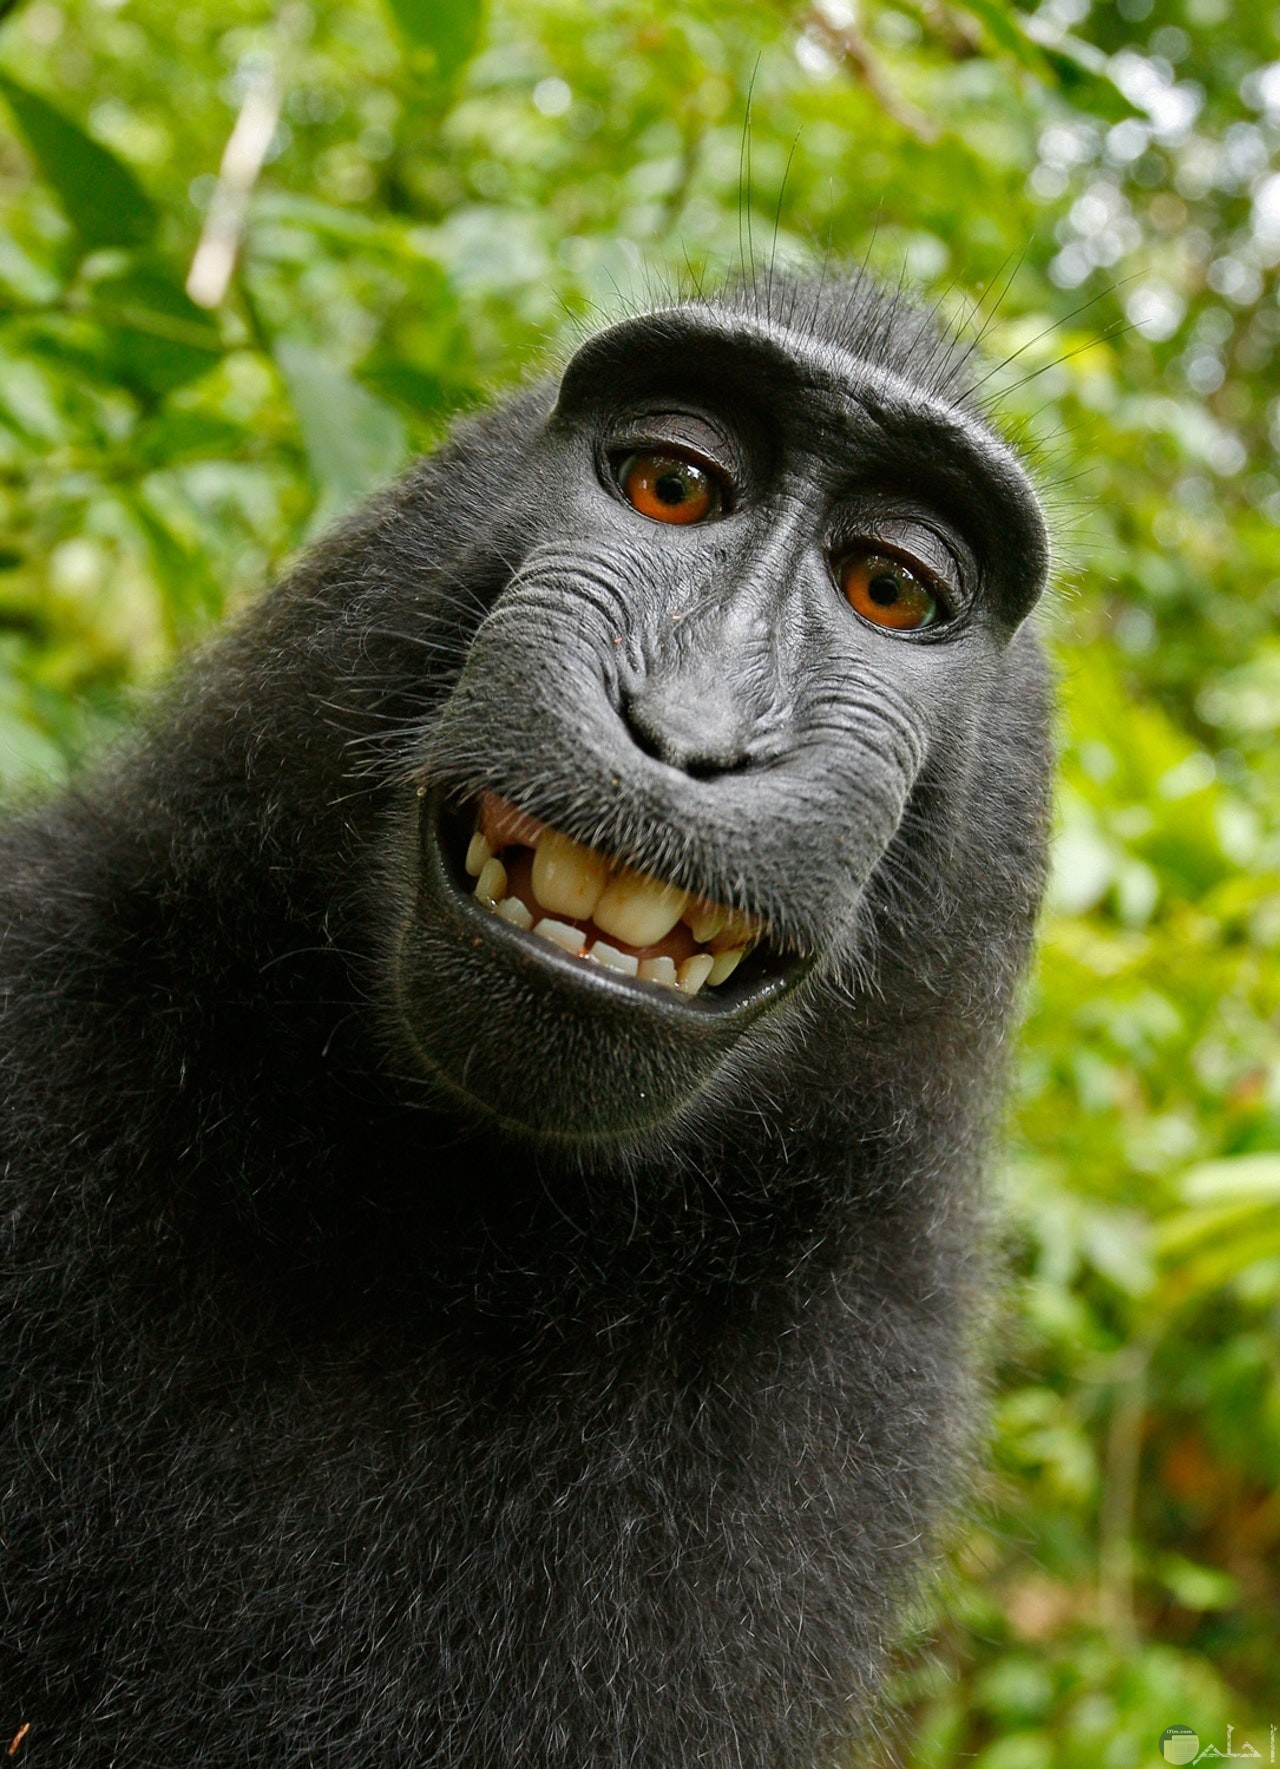 صورة كوميدية لقرد شامبانزي بضحكة جميلة ومميزة